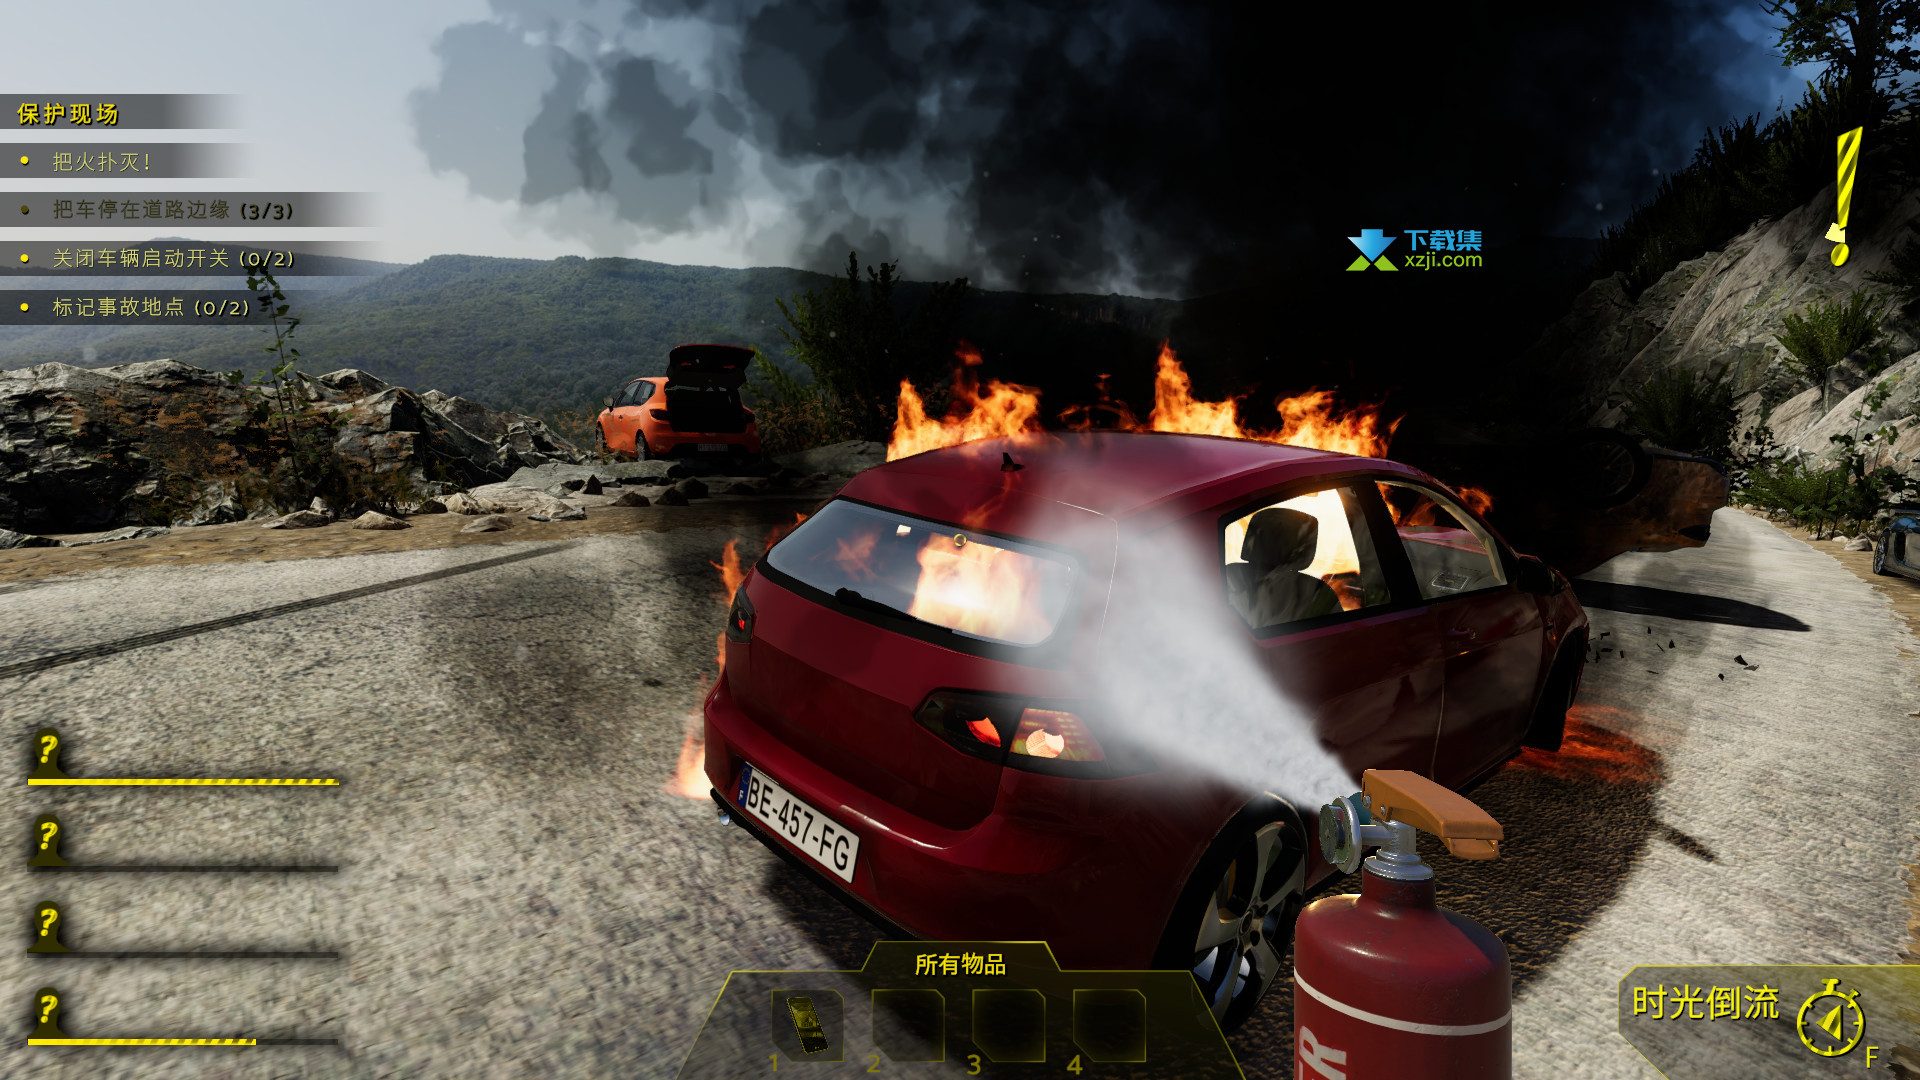 车祸模拟器游戏3D游戏下载,车祸模拟器游戏3D游戏手机版下载 v1.0.8 - 浏览器家园